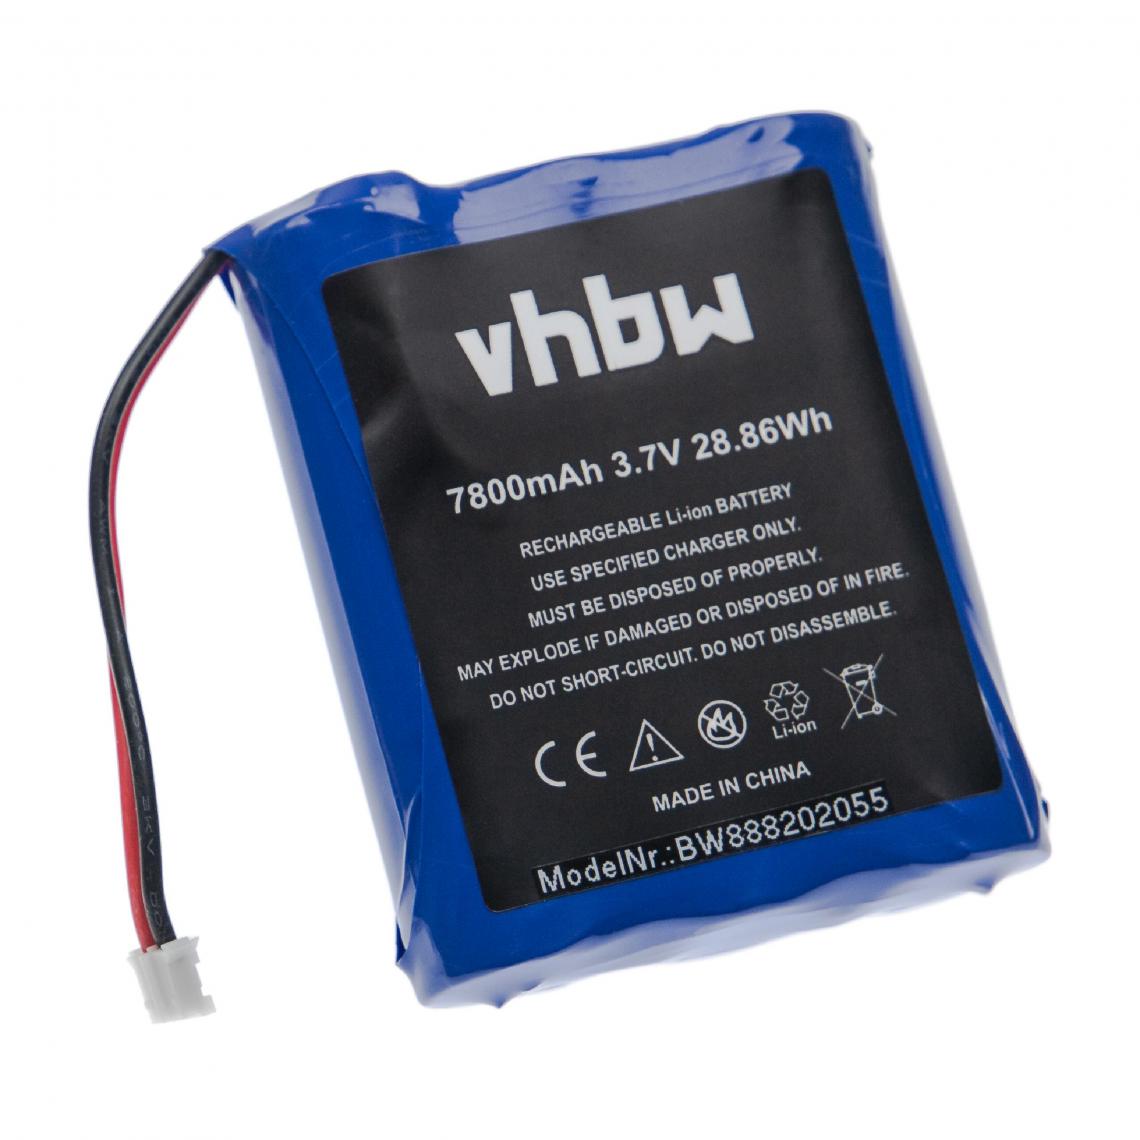 Vhbw - vhbw batterie remplacement pour Technaxx 4652 pour interphone, caméra d'interphone (7800mAh, 3,7V, Li-ion) - Autre appareil de mesure